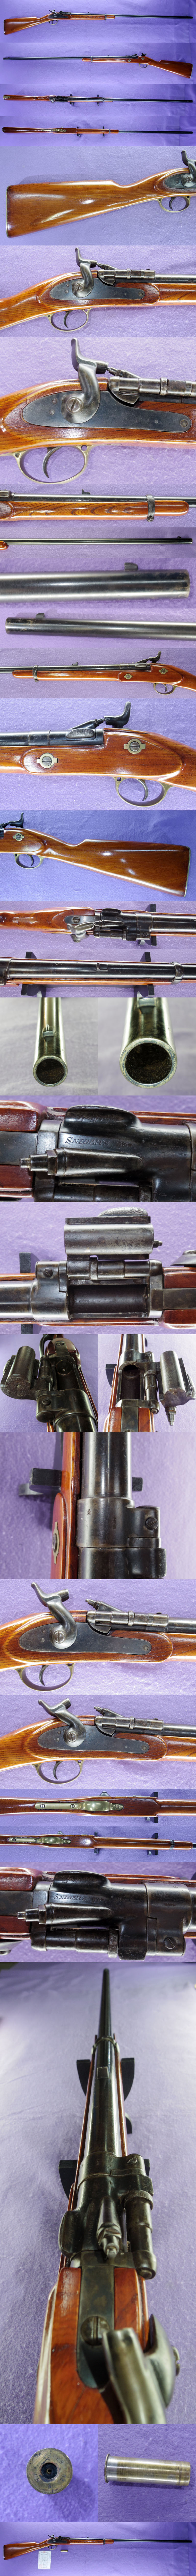 後装内火式銃  スナイダー銃（イギリス）各部分画像